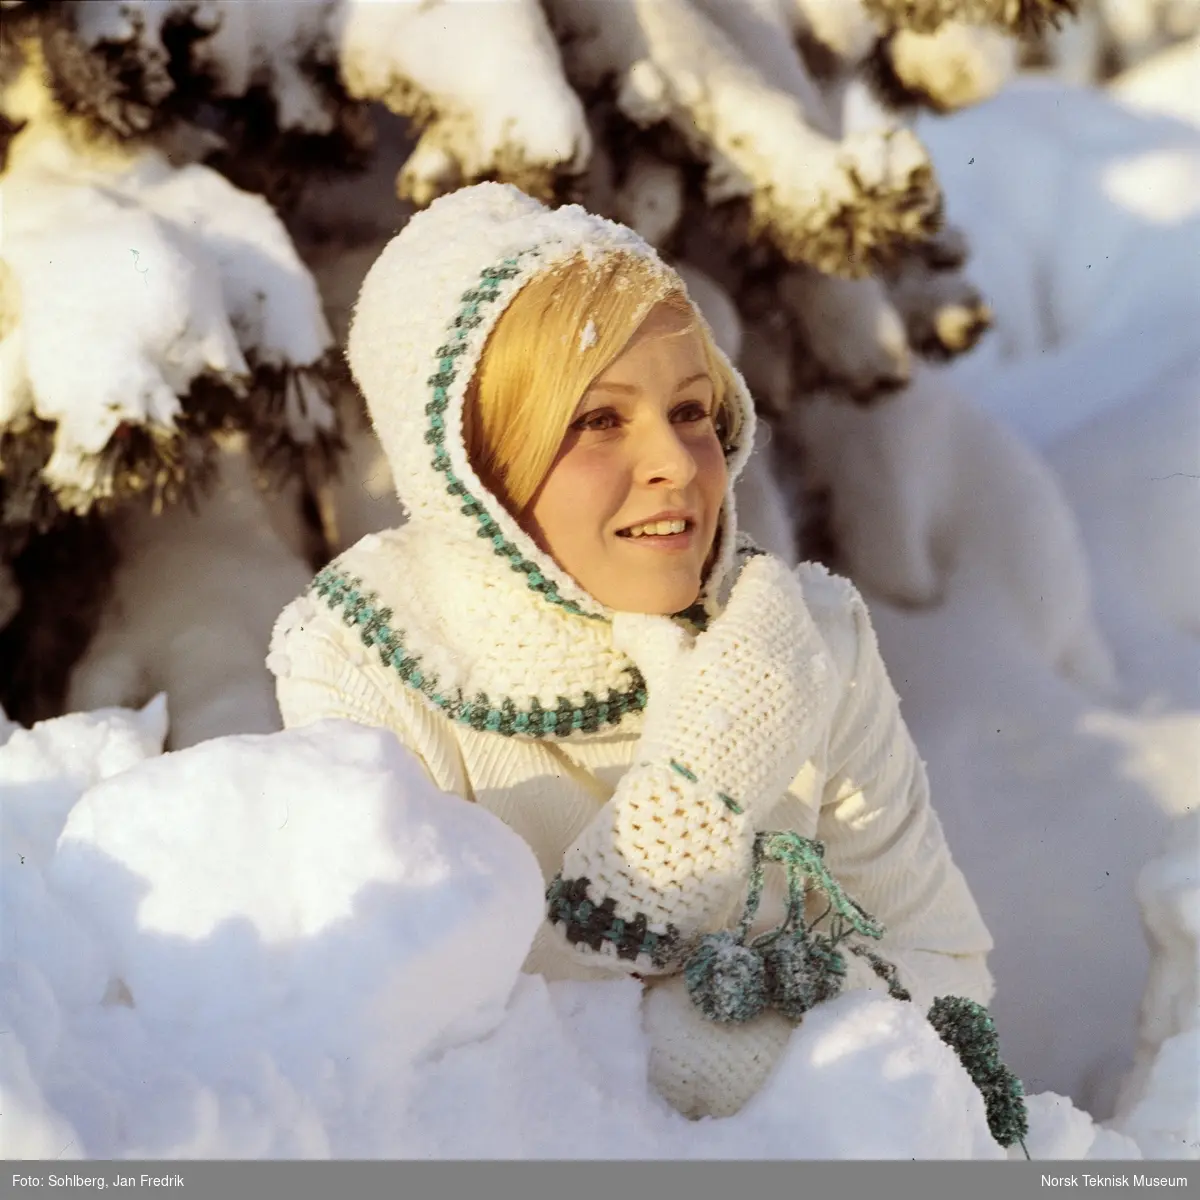 Kvinnelig modell viser vintermote. Hun har hvit genser, hvit strikket hette med grønt mønster og hvite votter med grønne snorer.